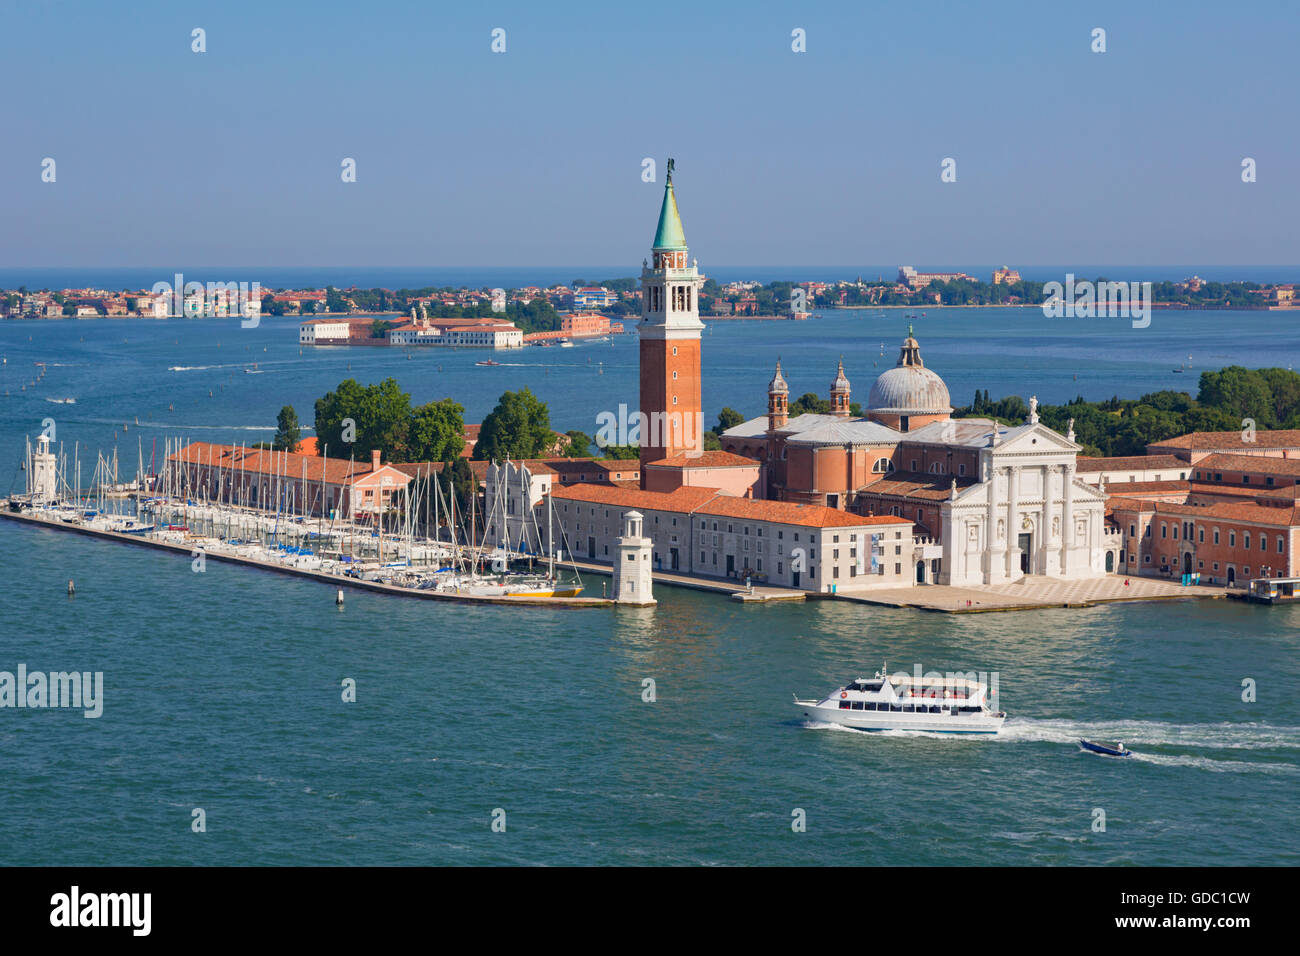 Venezia, Provincia di Venezia, regione Veneto, Italia. Vista dell'isola o isola di San Giorgio Maggiore e la chiesa con lo stesso nome. Foto Stock